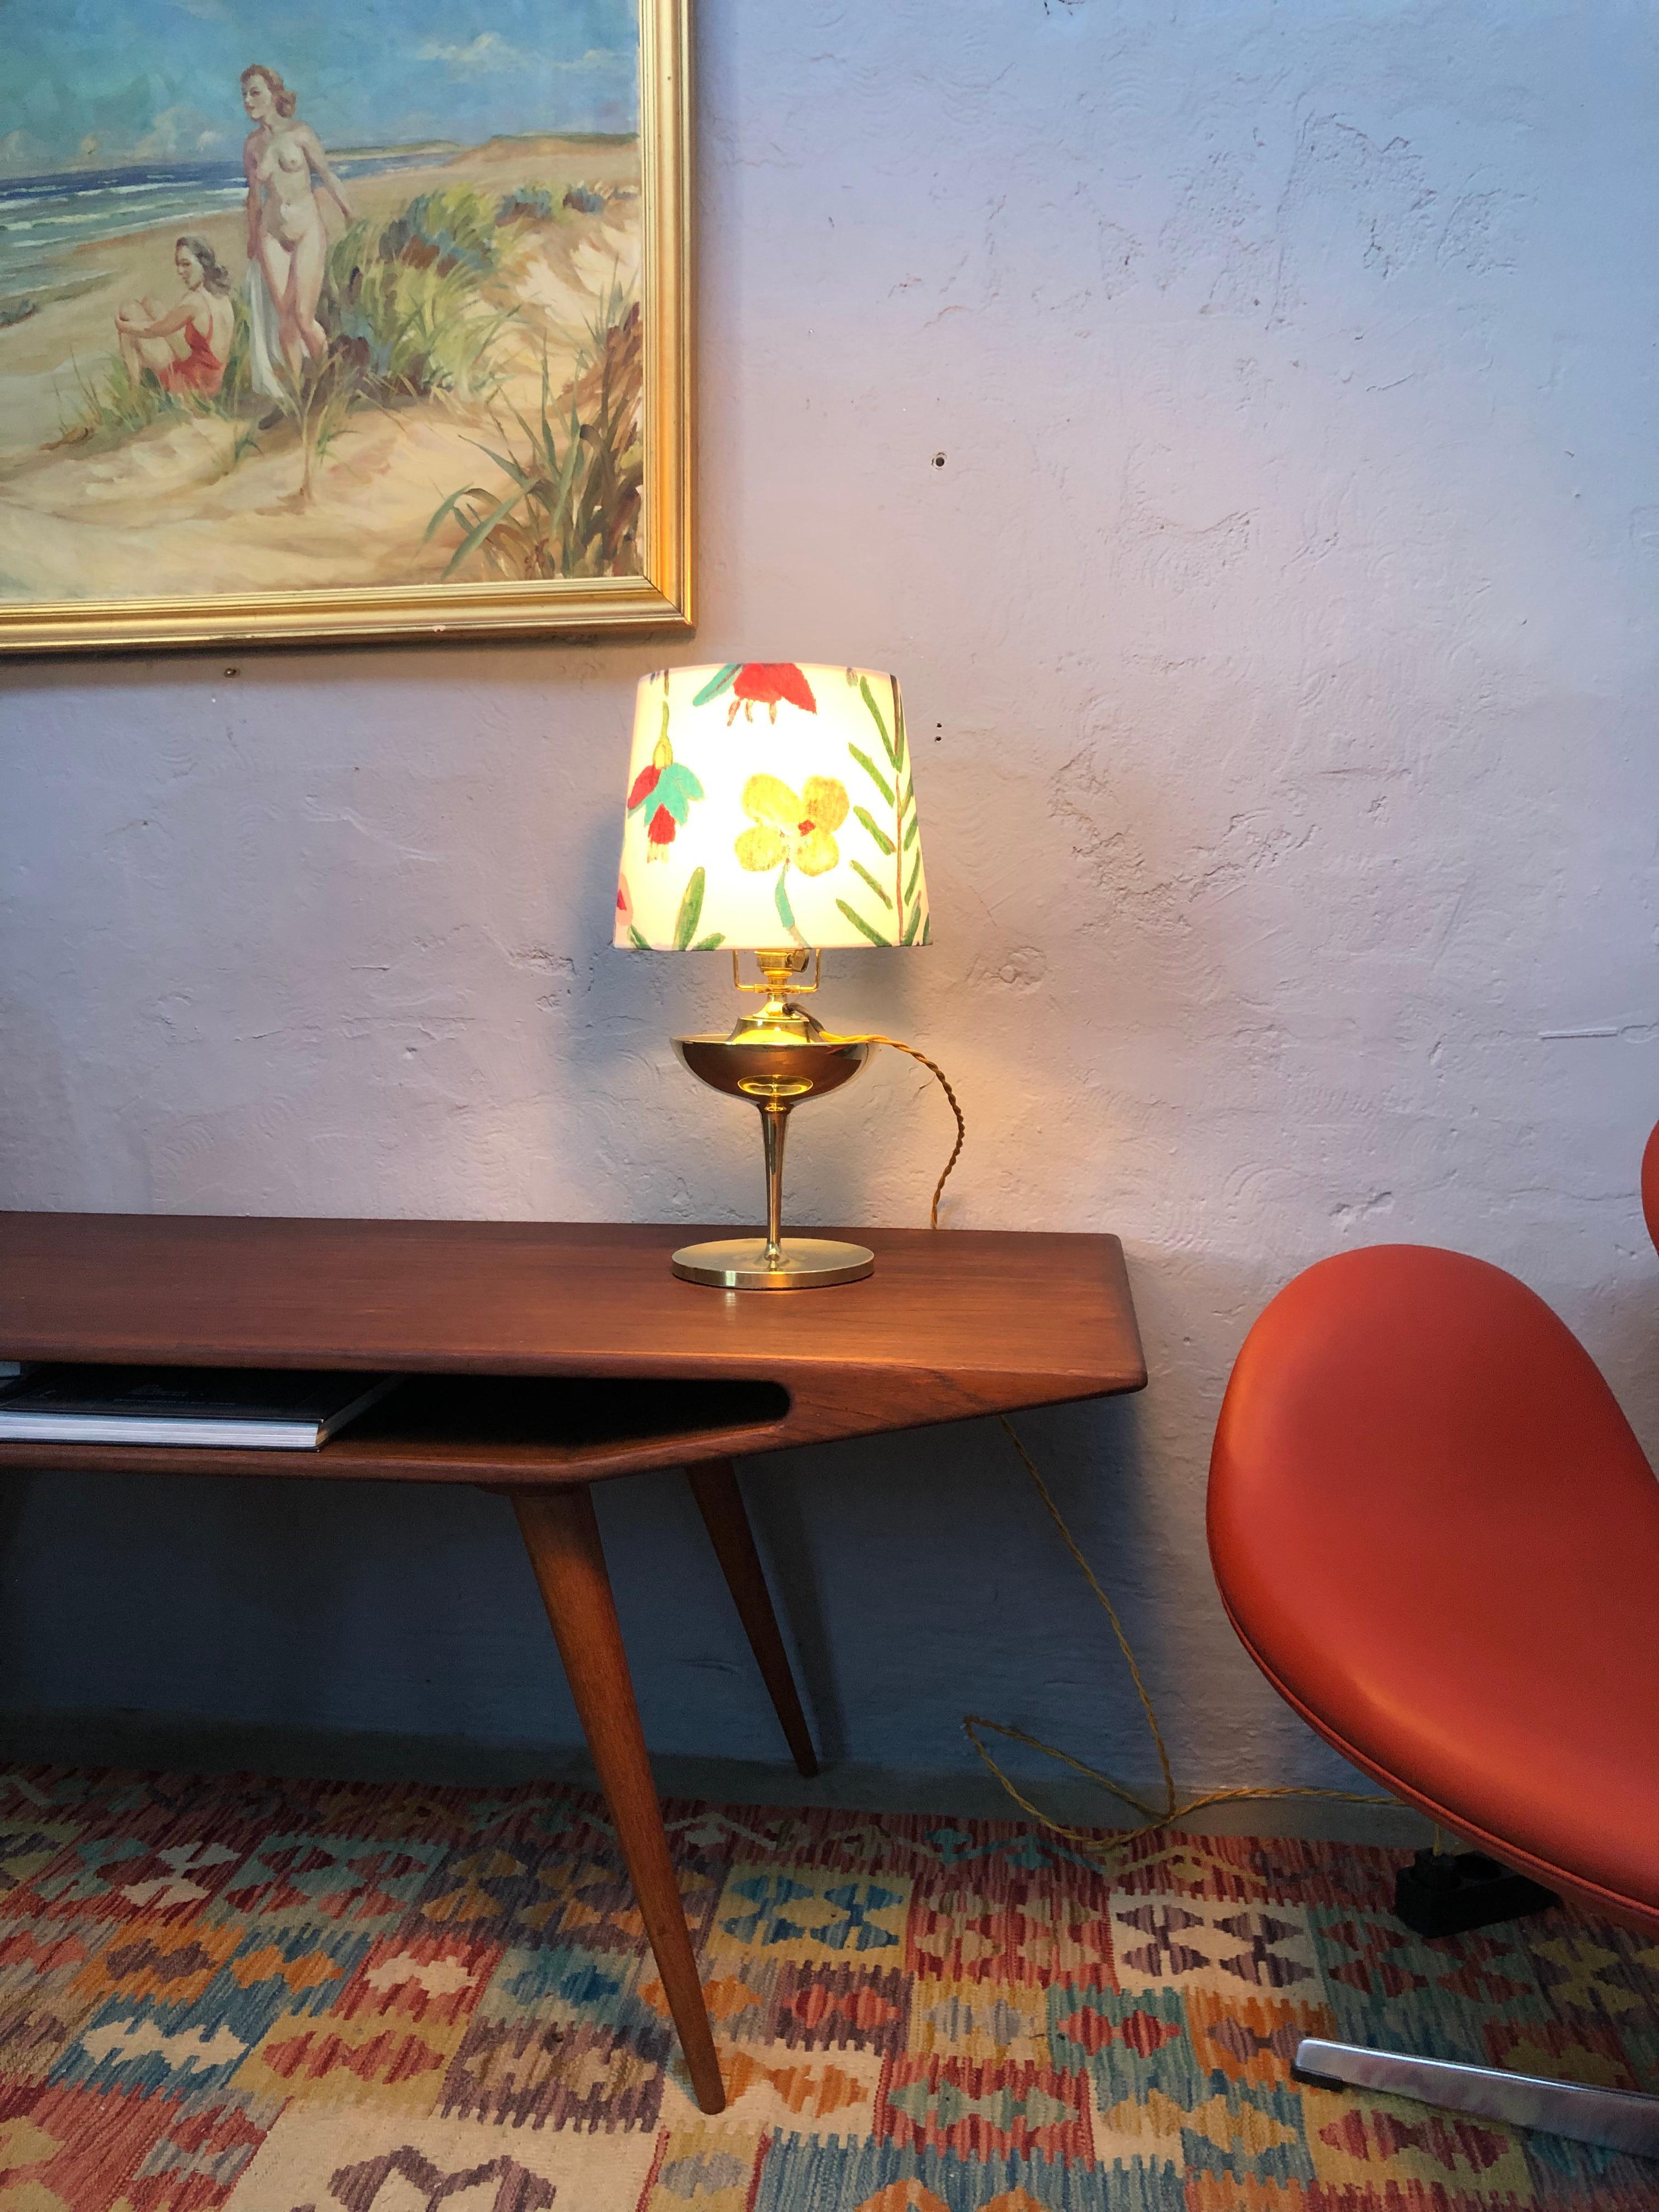 Eine antike elektrische Öllampe aus Messing von Swedish Böhlmarks aus Stockholm. 
Eine sehr elegante Lampe mit klassischem Design von einem der führenden schwedischen Lampenhersteller aus dieser Zeit. 
Die Lampe wurde mit einem verdrillten